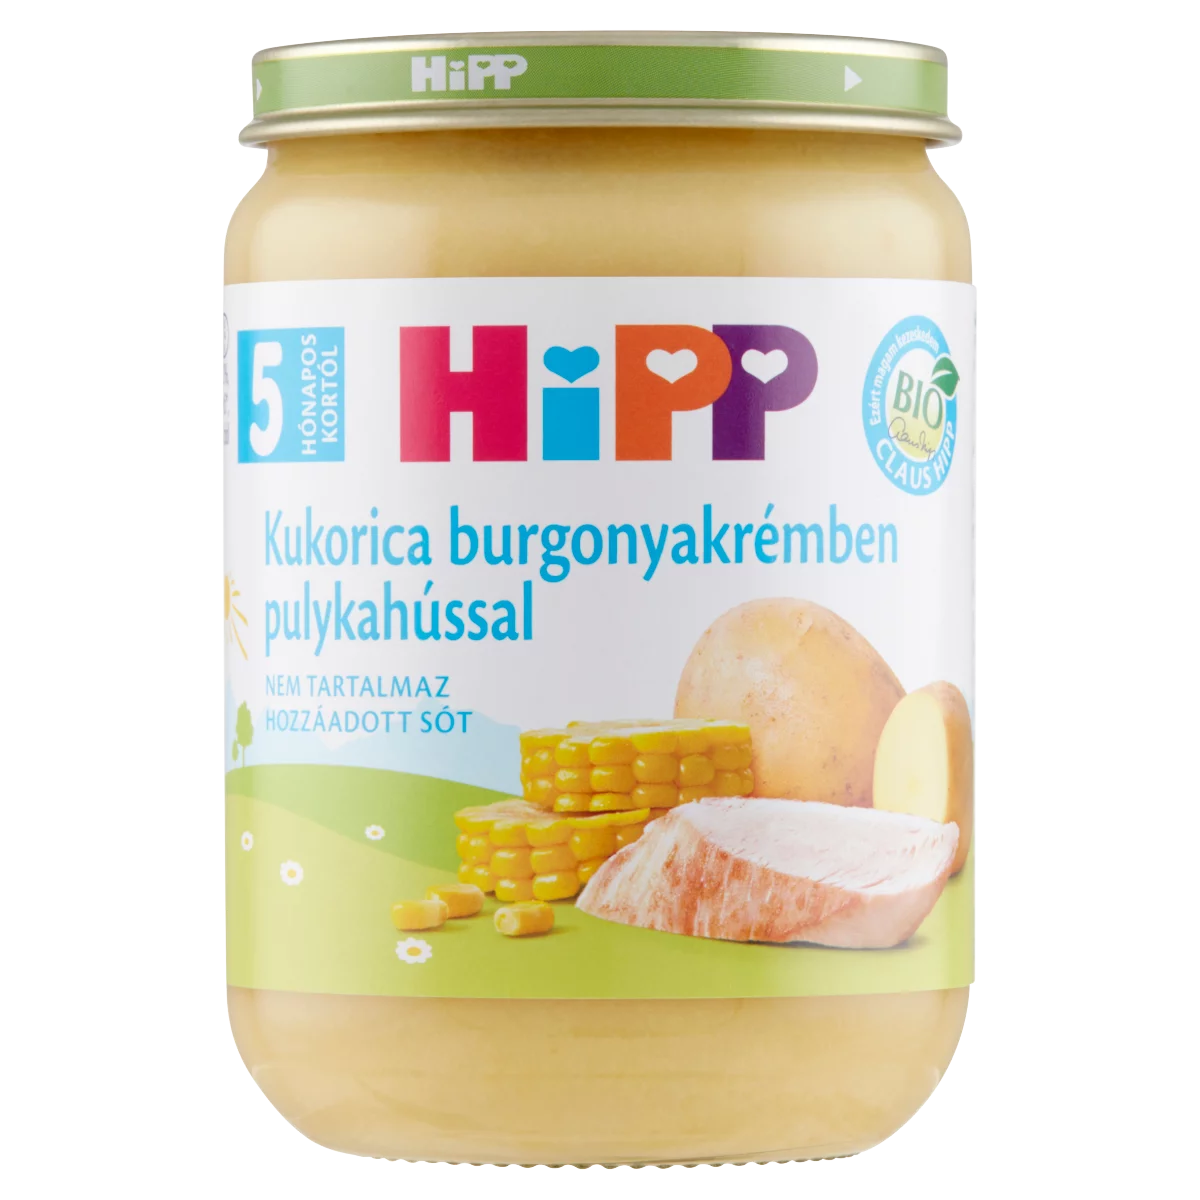 HiPP BIO kukorica burgonyakrémben pulykahússal bébiétel 5 hónapos kortól 190 g